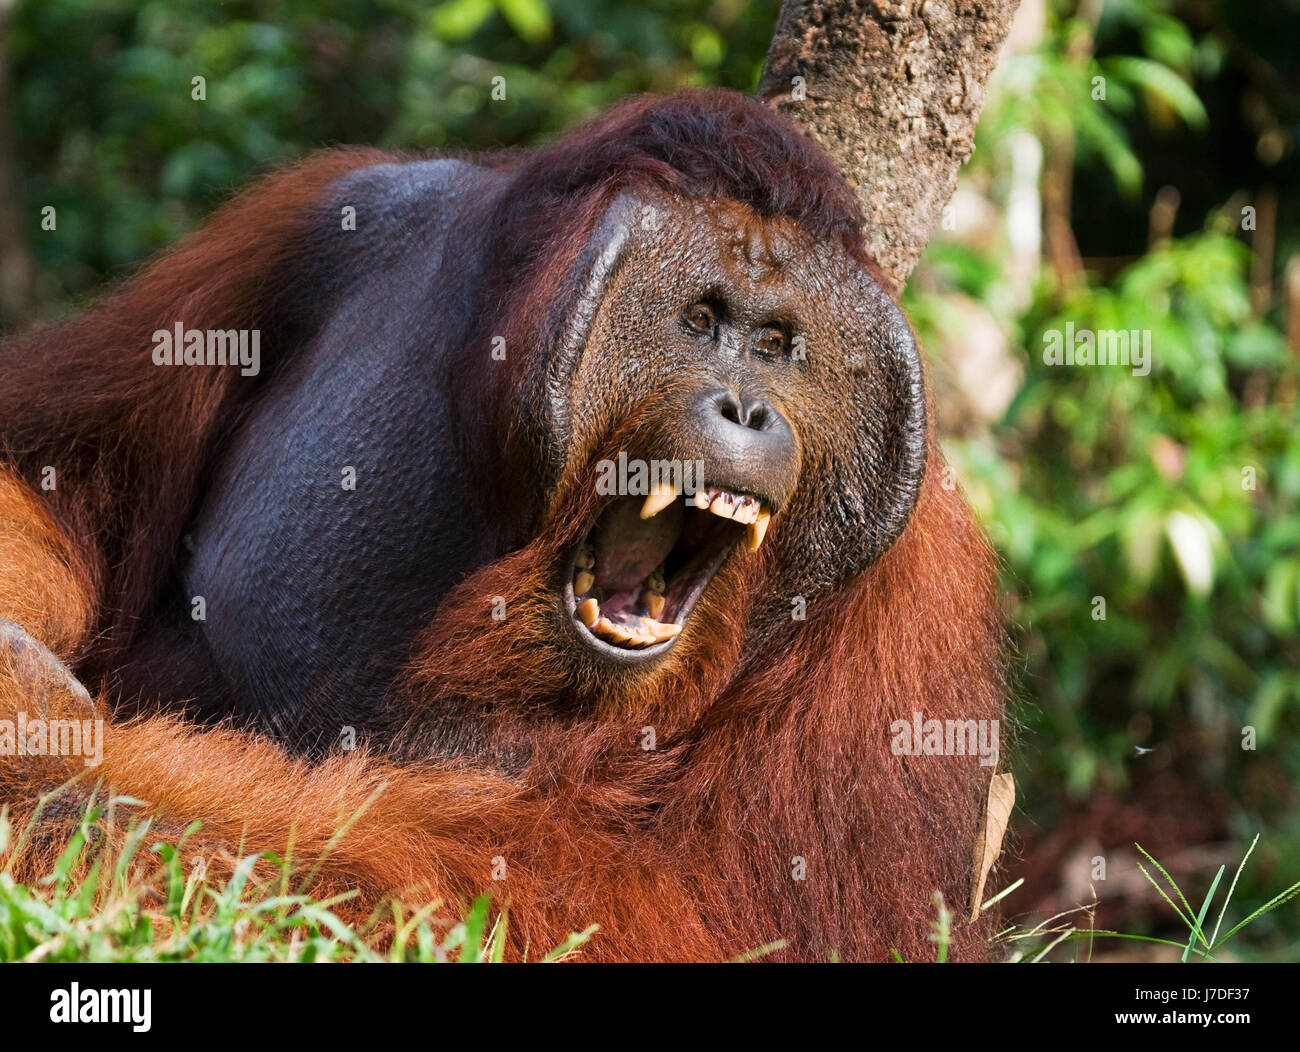 Große beherrschende wild männlichen Orang-utan schwimmen über der Fütterung  Plattform, Tanjung Puting Nationalpark, Kalimantan, Indonesien  Stockfotografie - Alamy